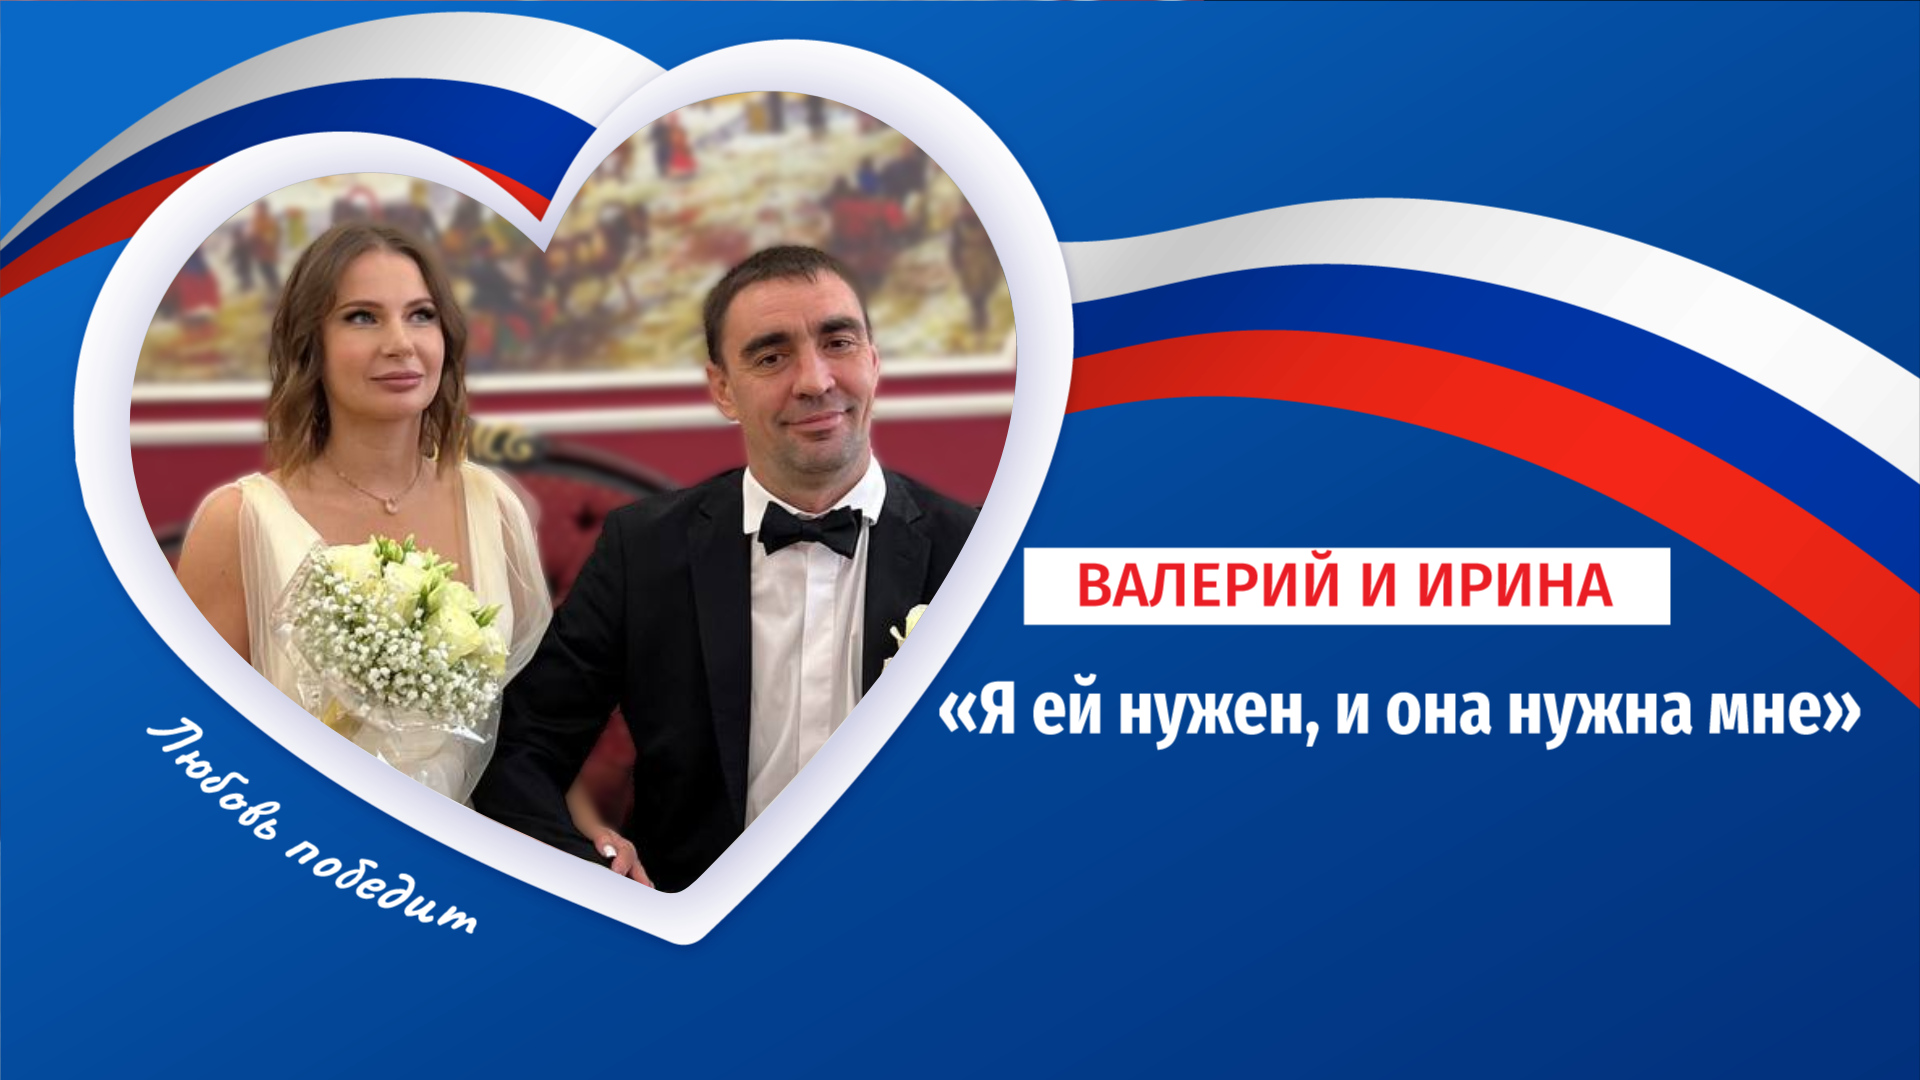 Валерий и Ирина: свадьба после СВО